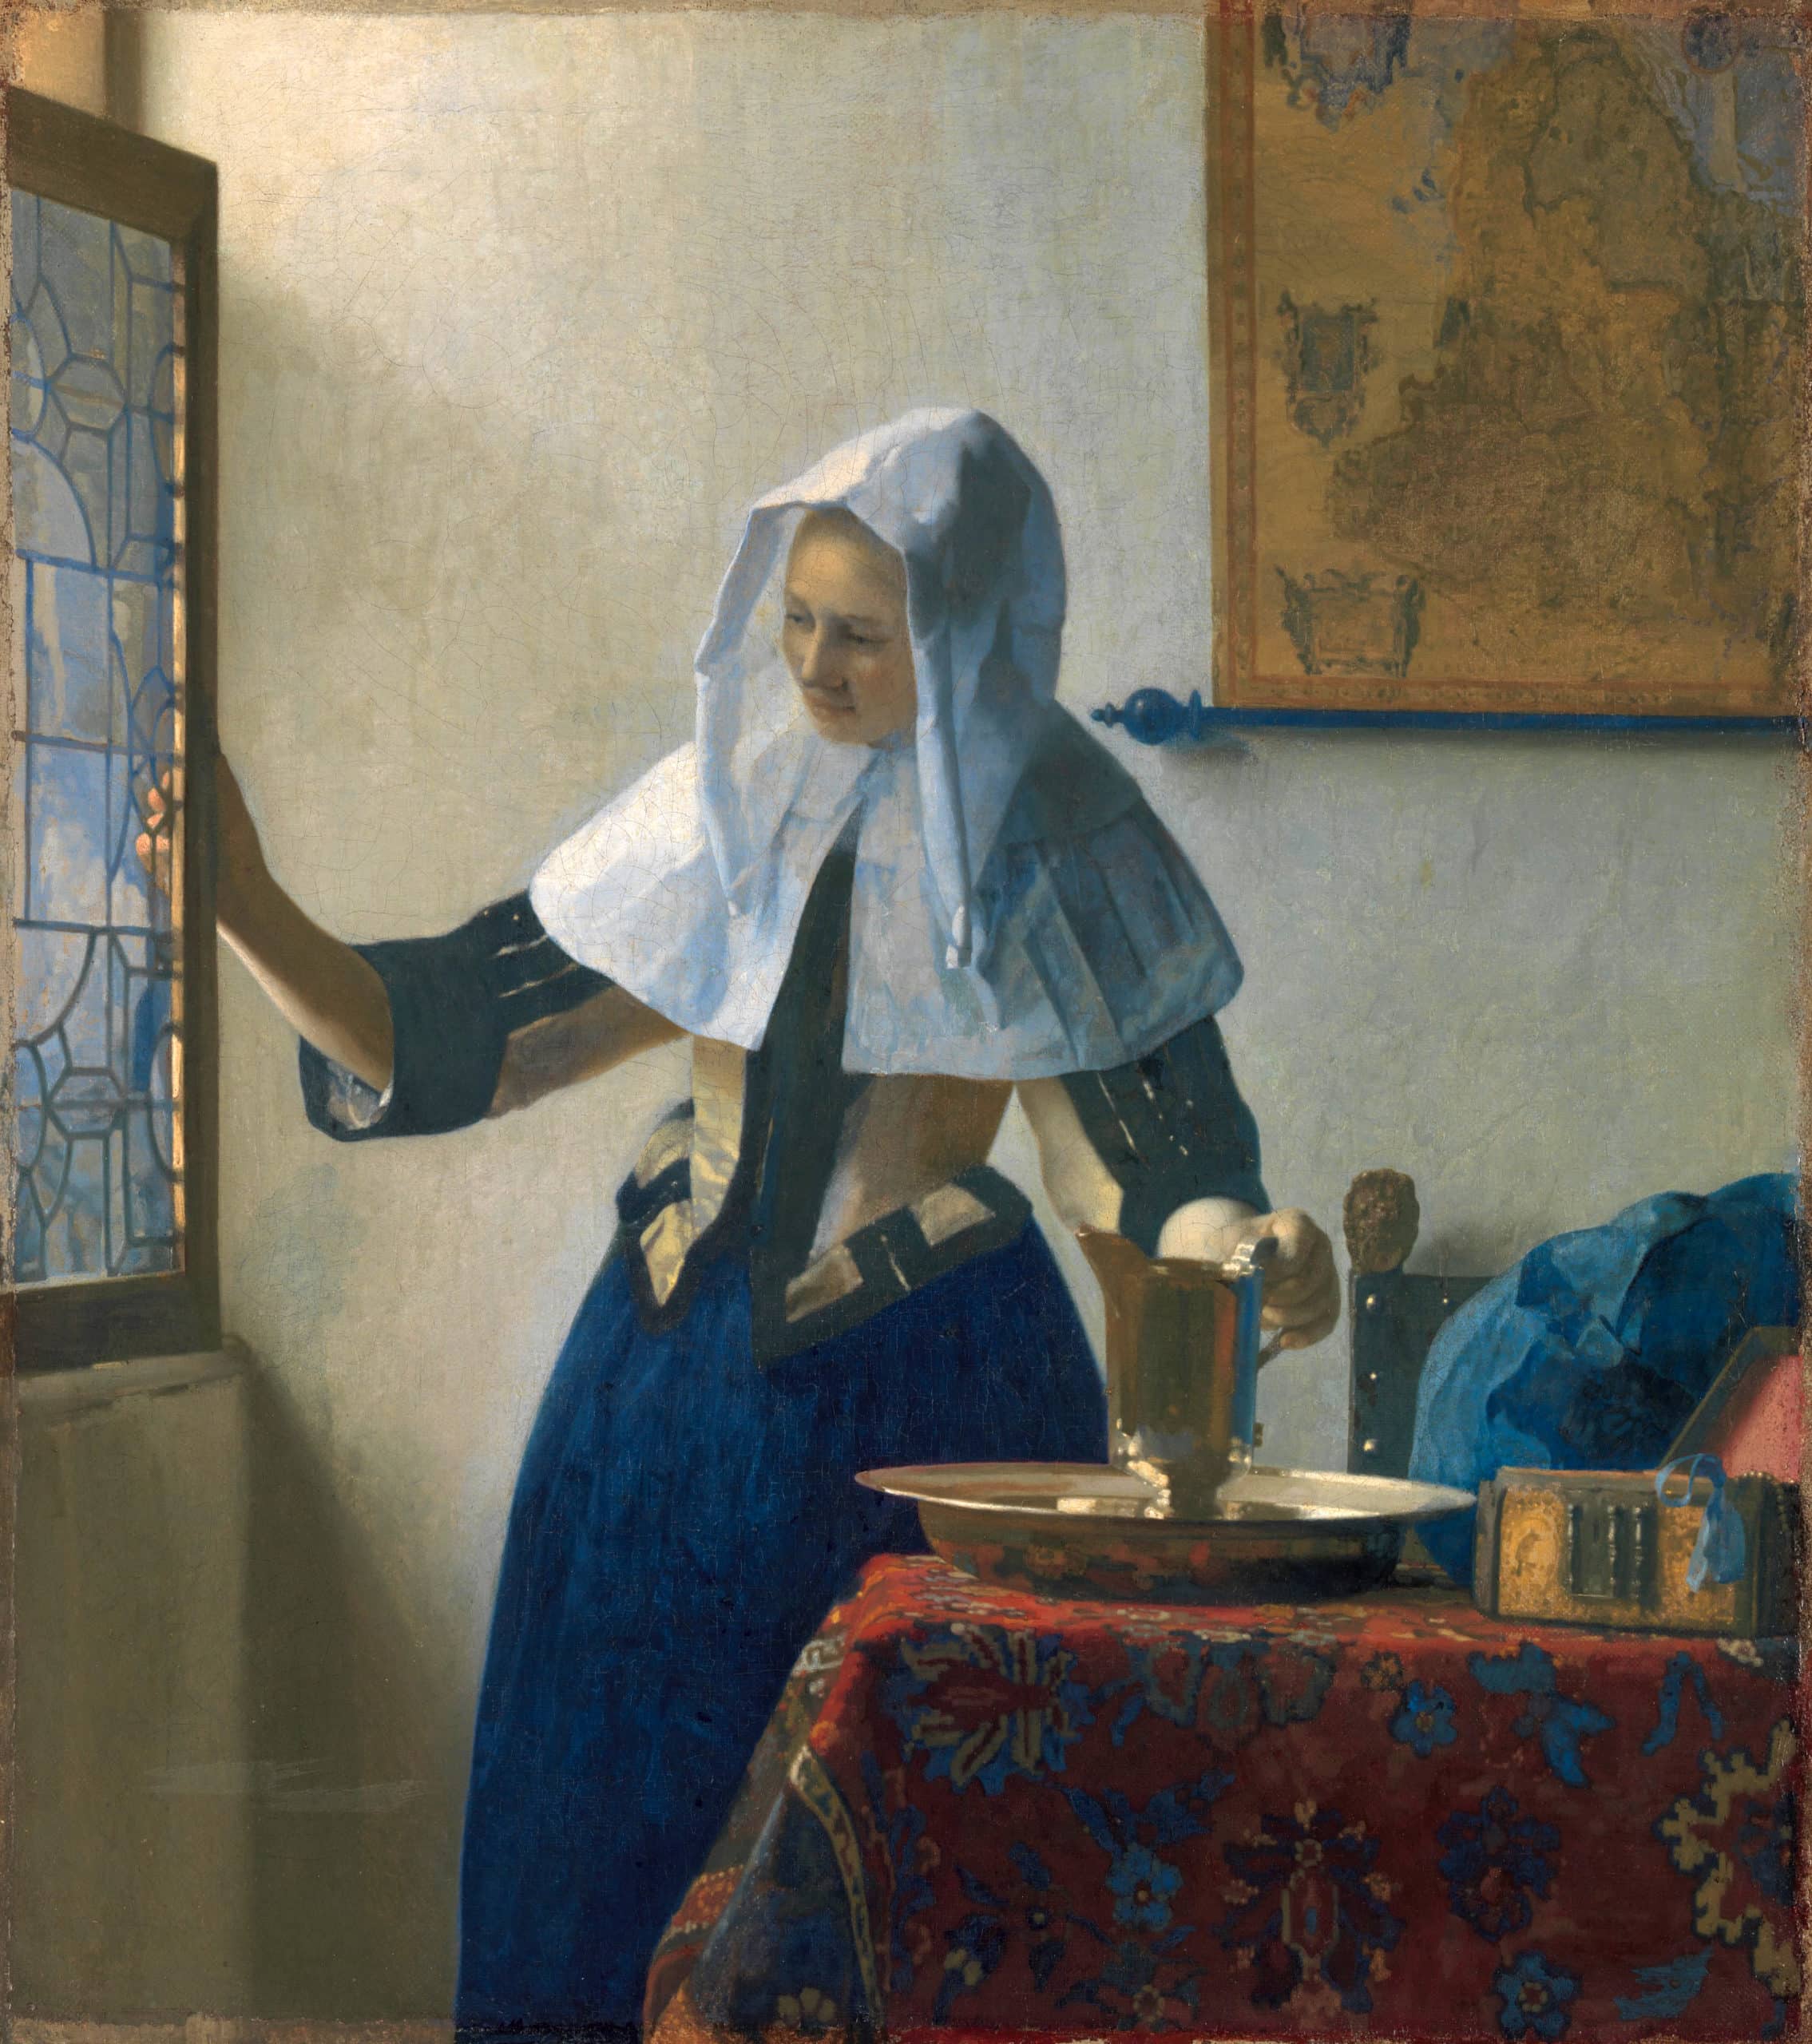 Junge Frau mit Wasserkanne am Fenster - Gemälde von Jan Vermeer